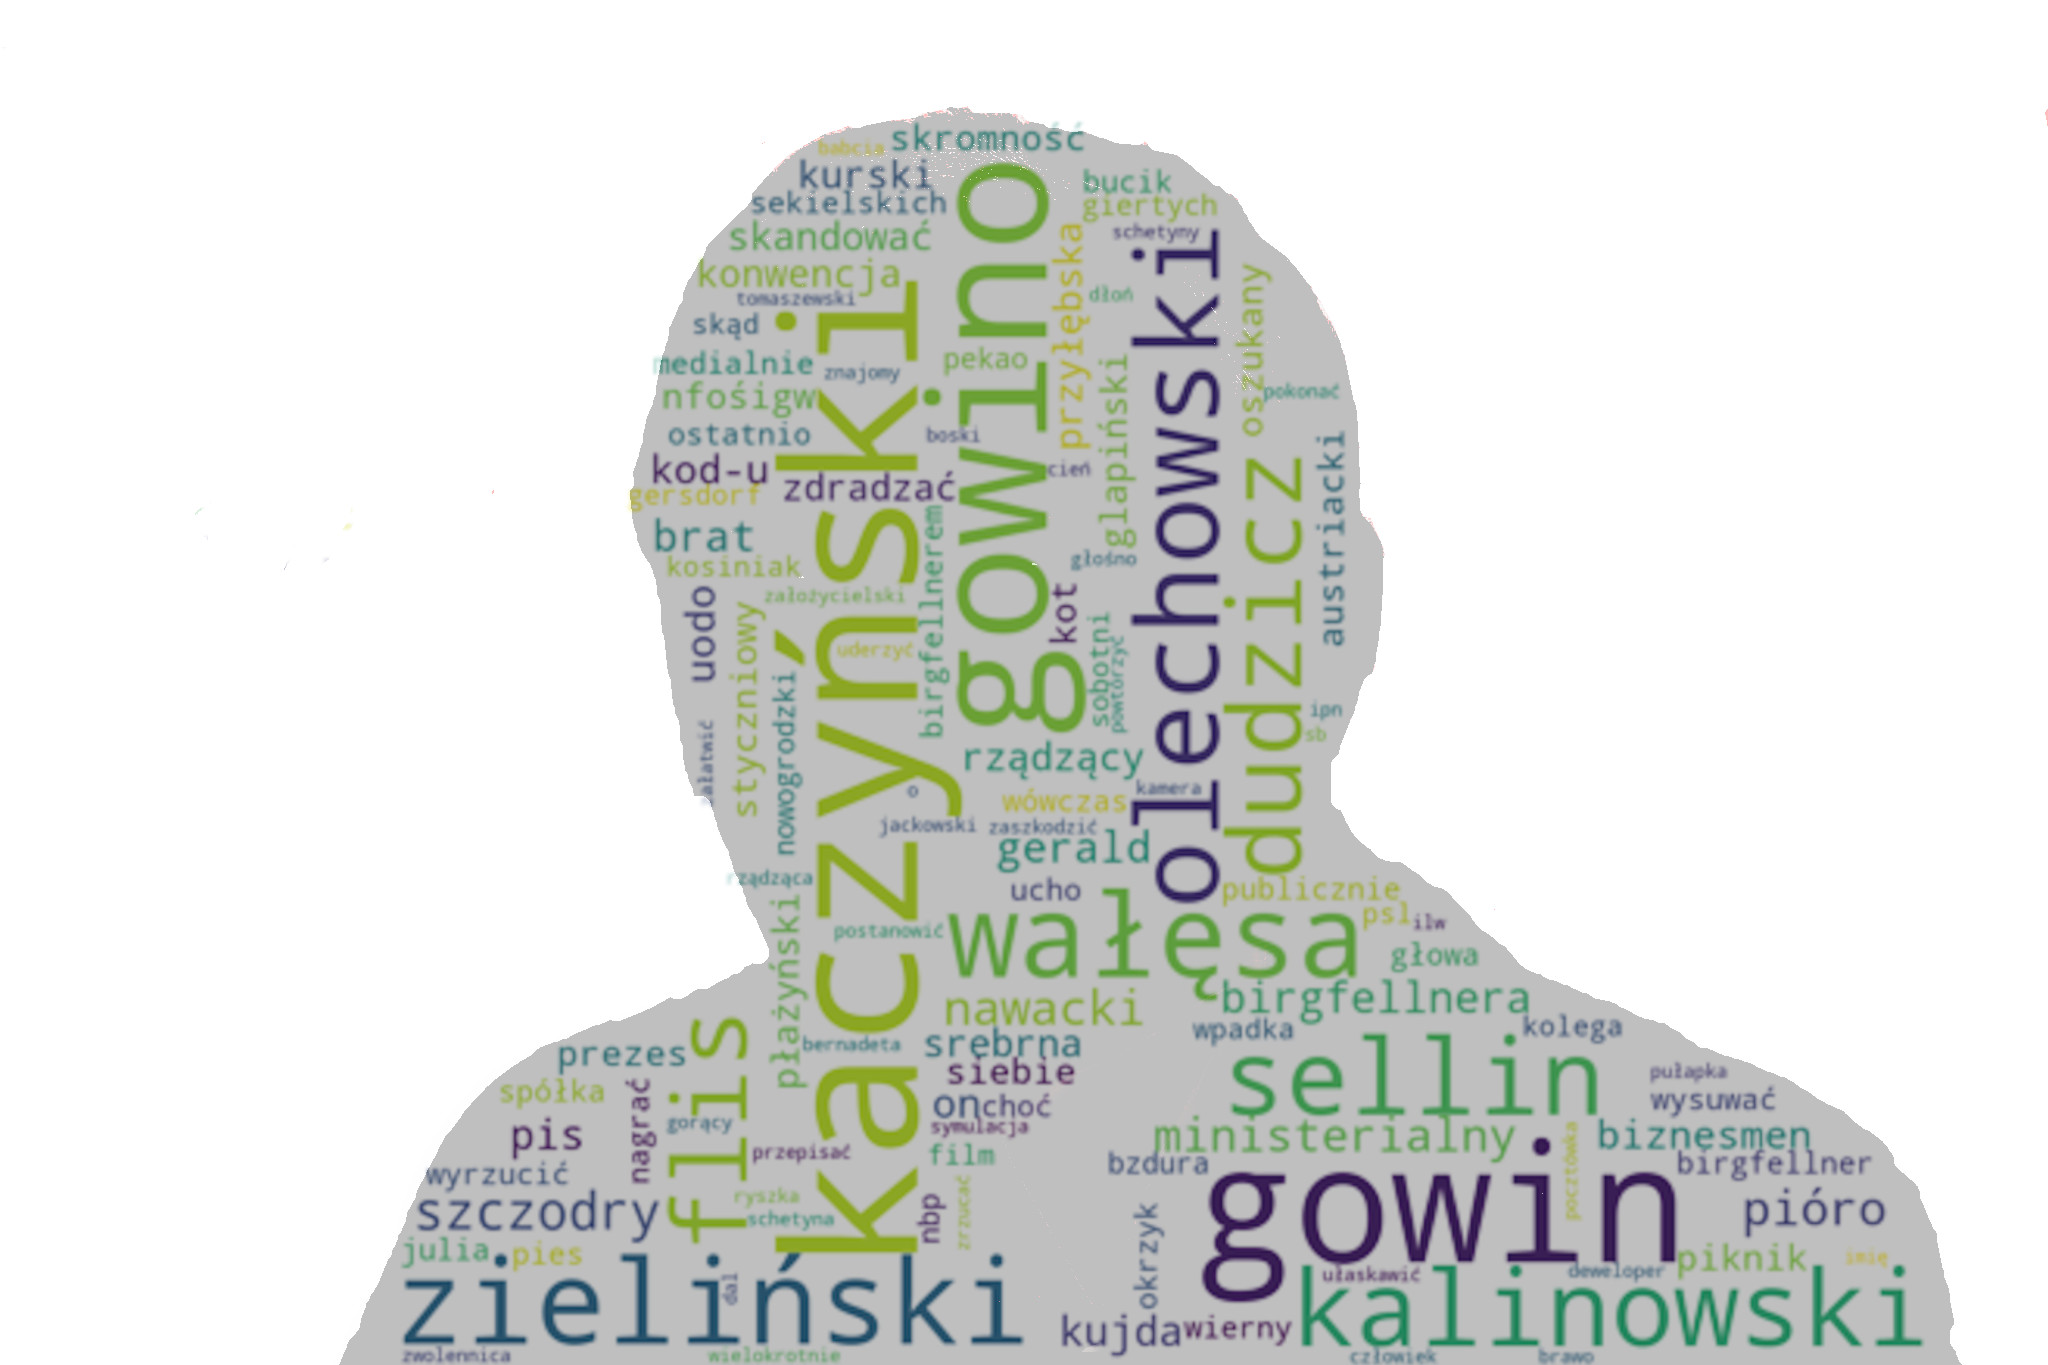 Kaczyński wordcloud